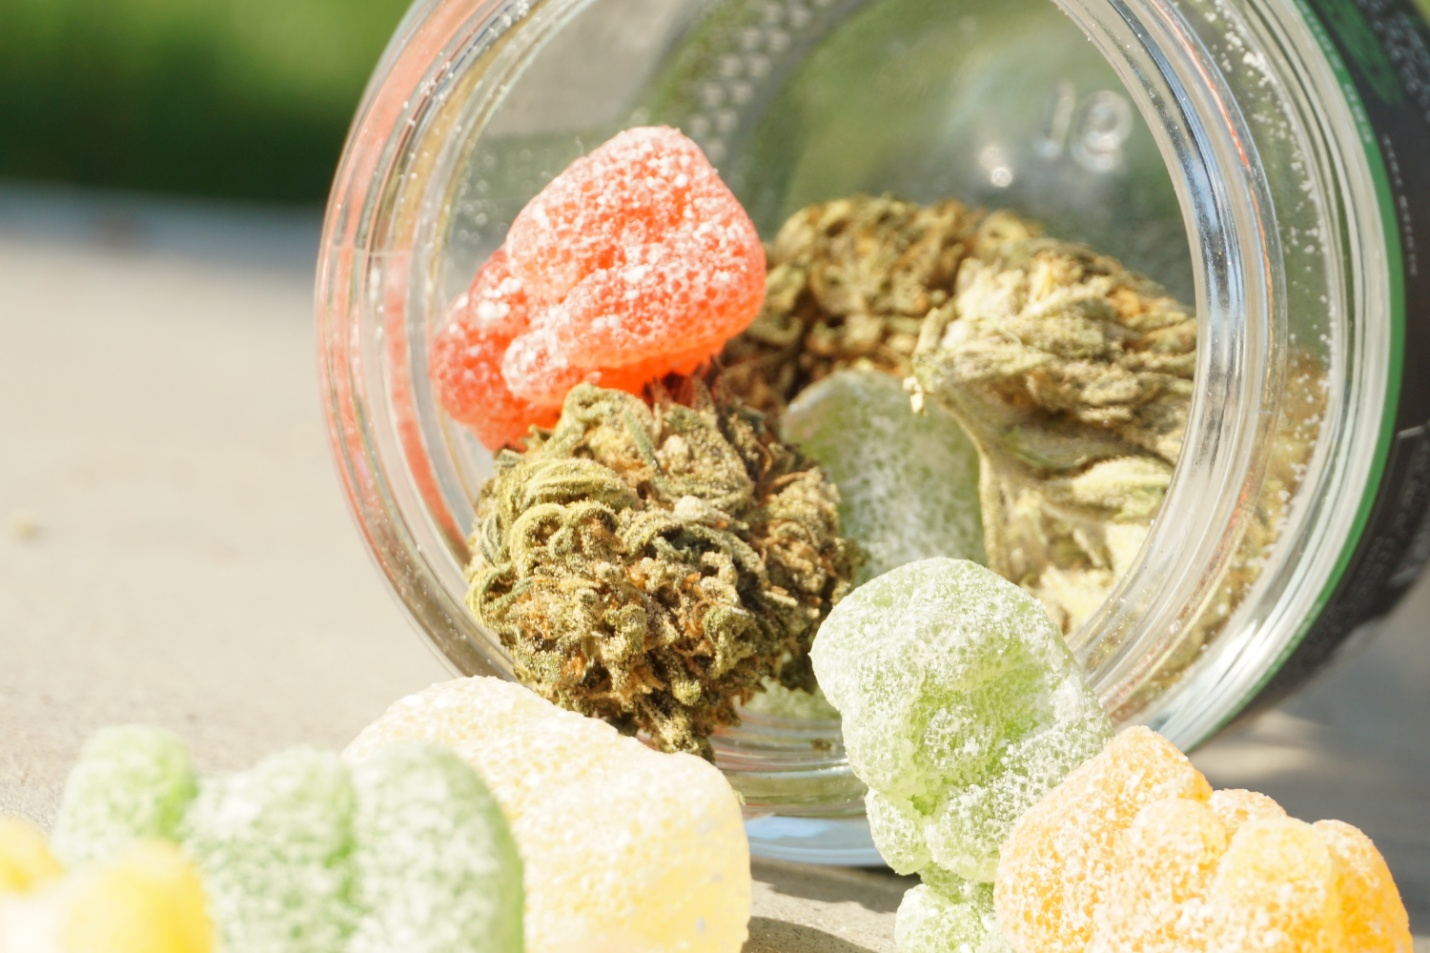 edible-cannabis in a jar